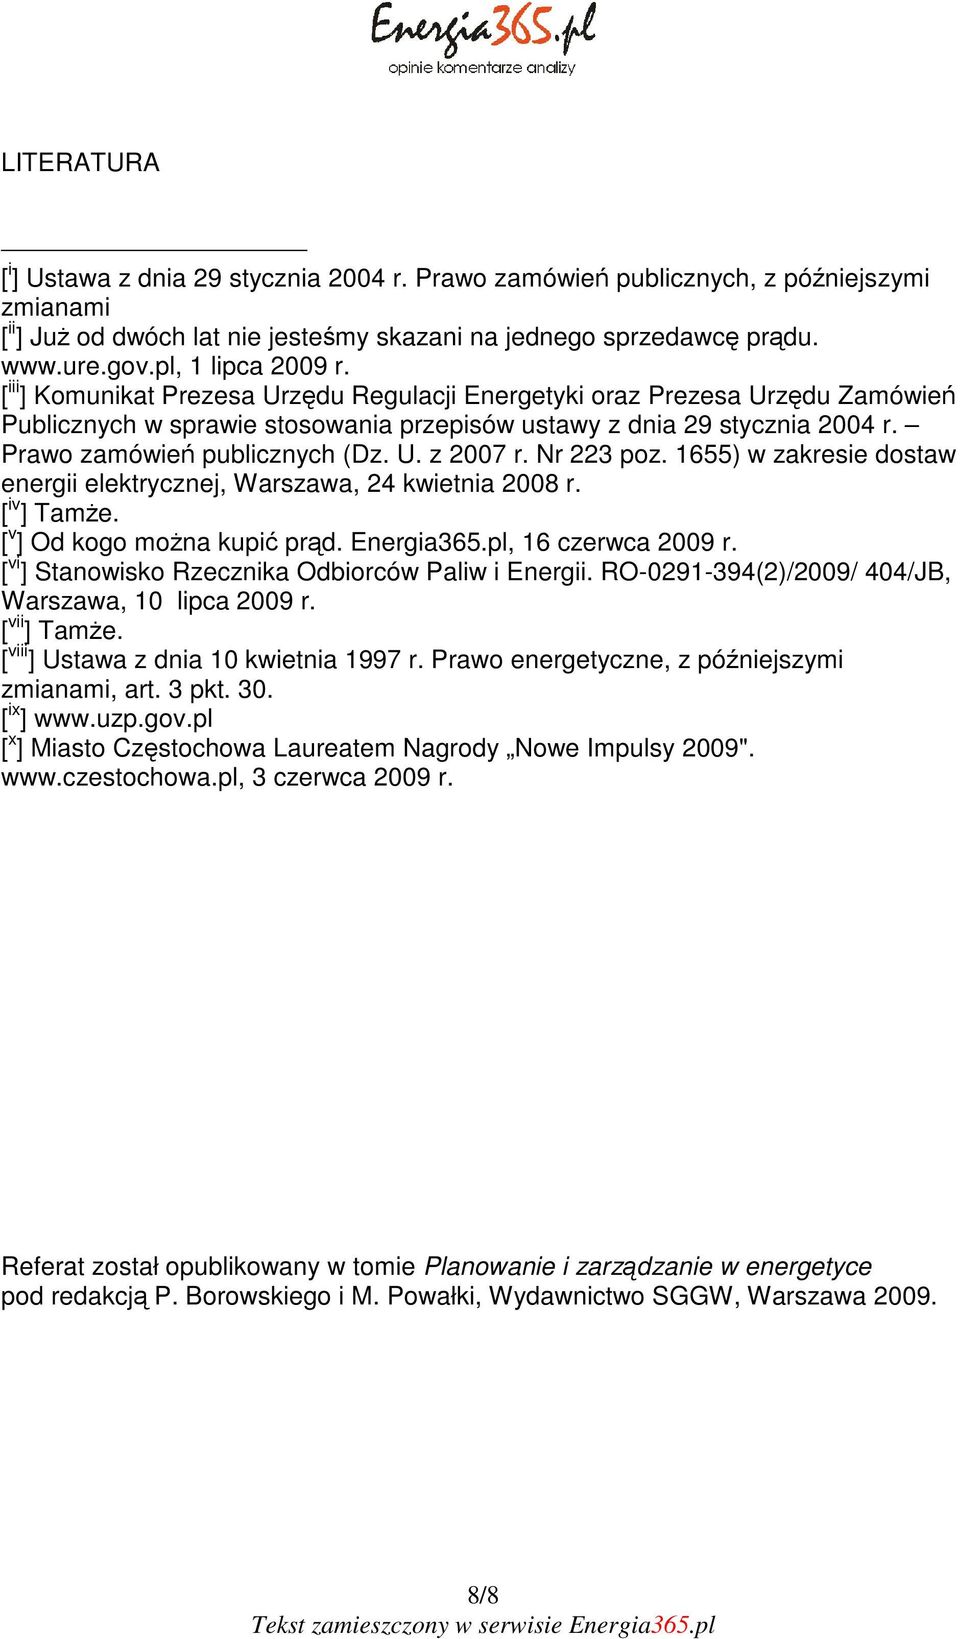 Prawo zamówień publicznych (Dz. U. z 2007 r. Nr 223 poz. 1655) w zakresie dostaw energii elektrycznej, Warszawa, 24 kwietnia 2008 r. [ iv ] Tamże. [ v ] Od kogo można kupić prąd. Energia365.